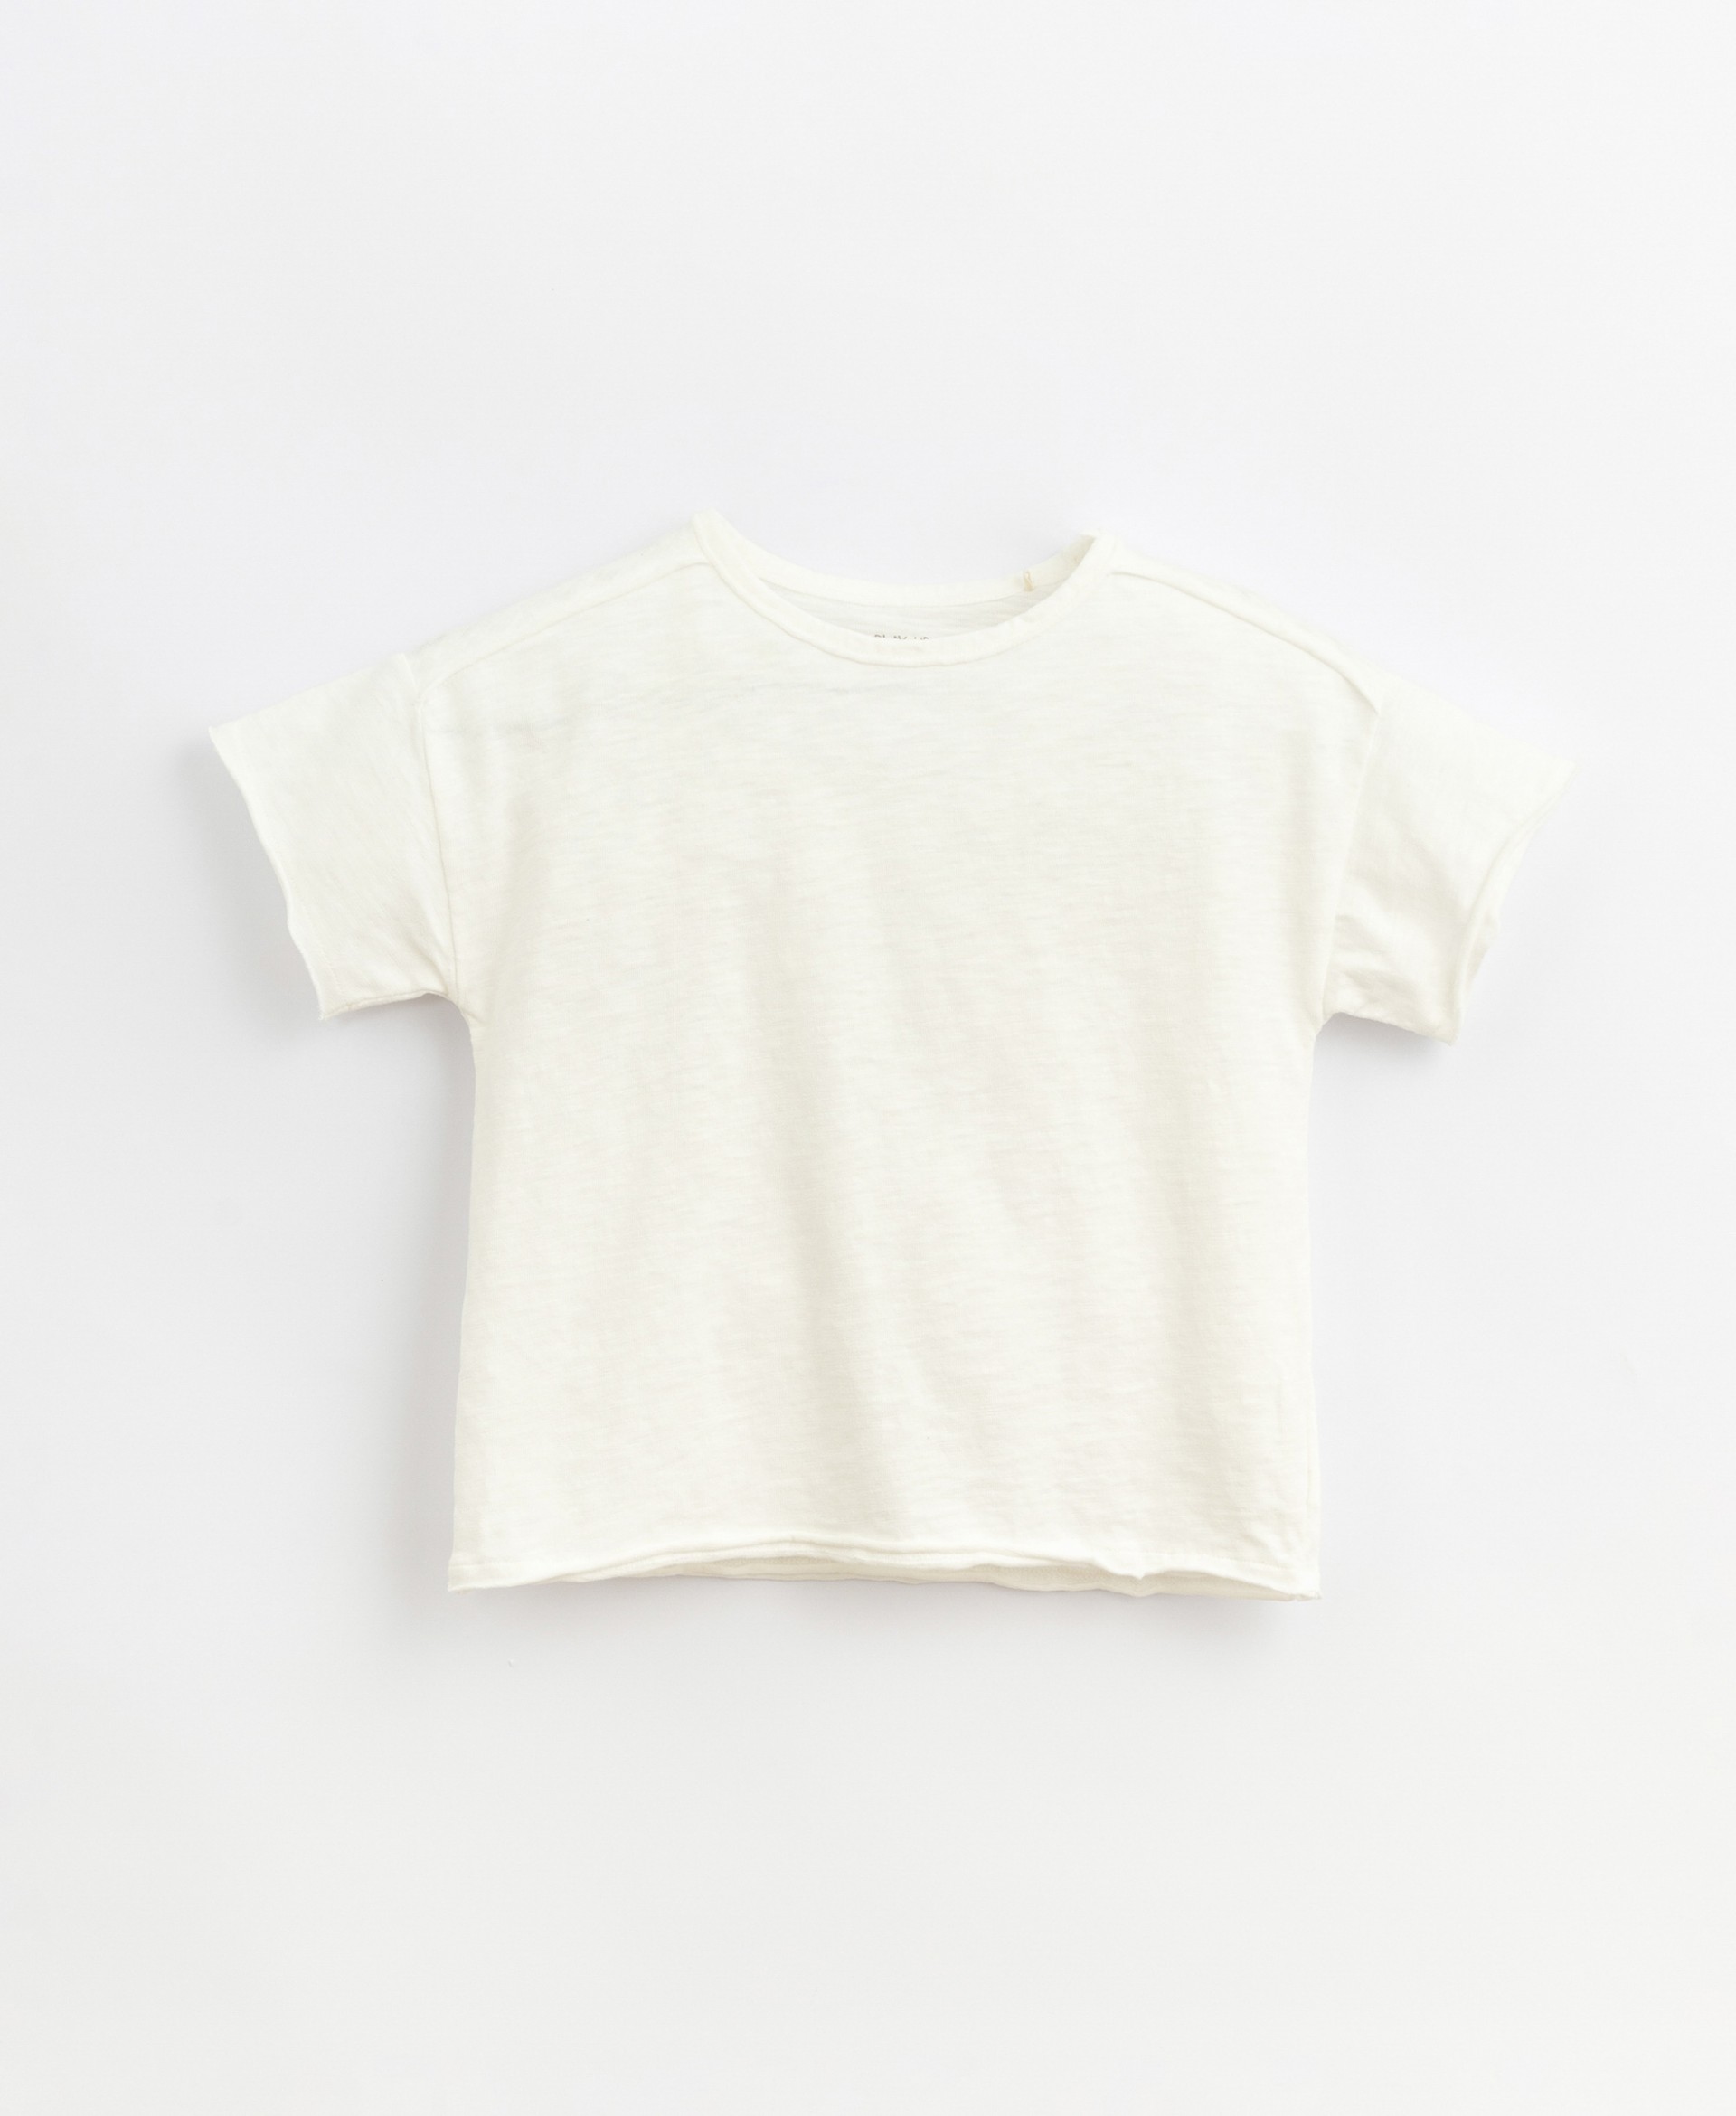 T-shirt with round neckline | Basketry